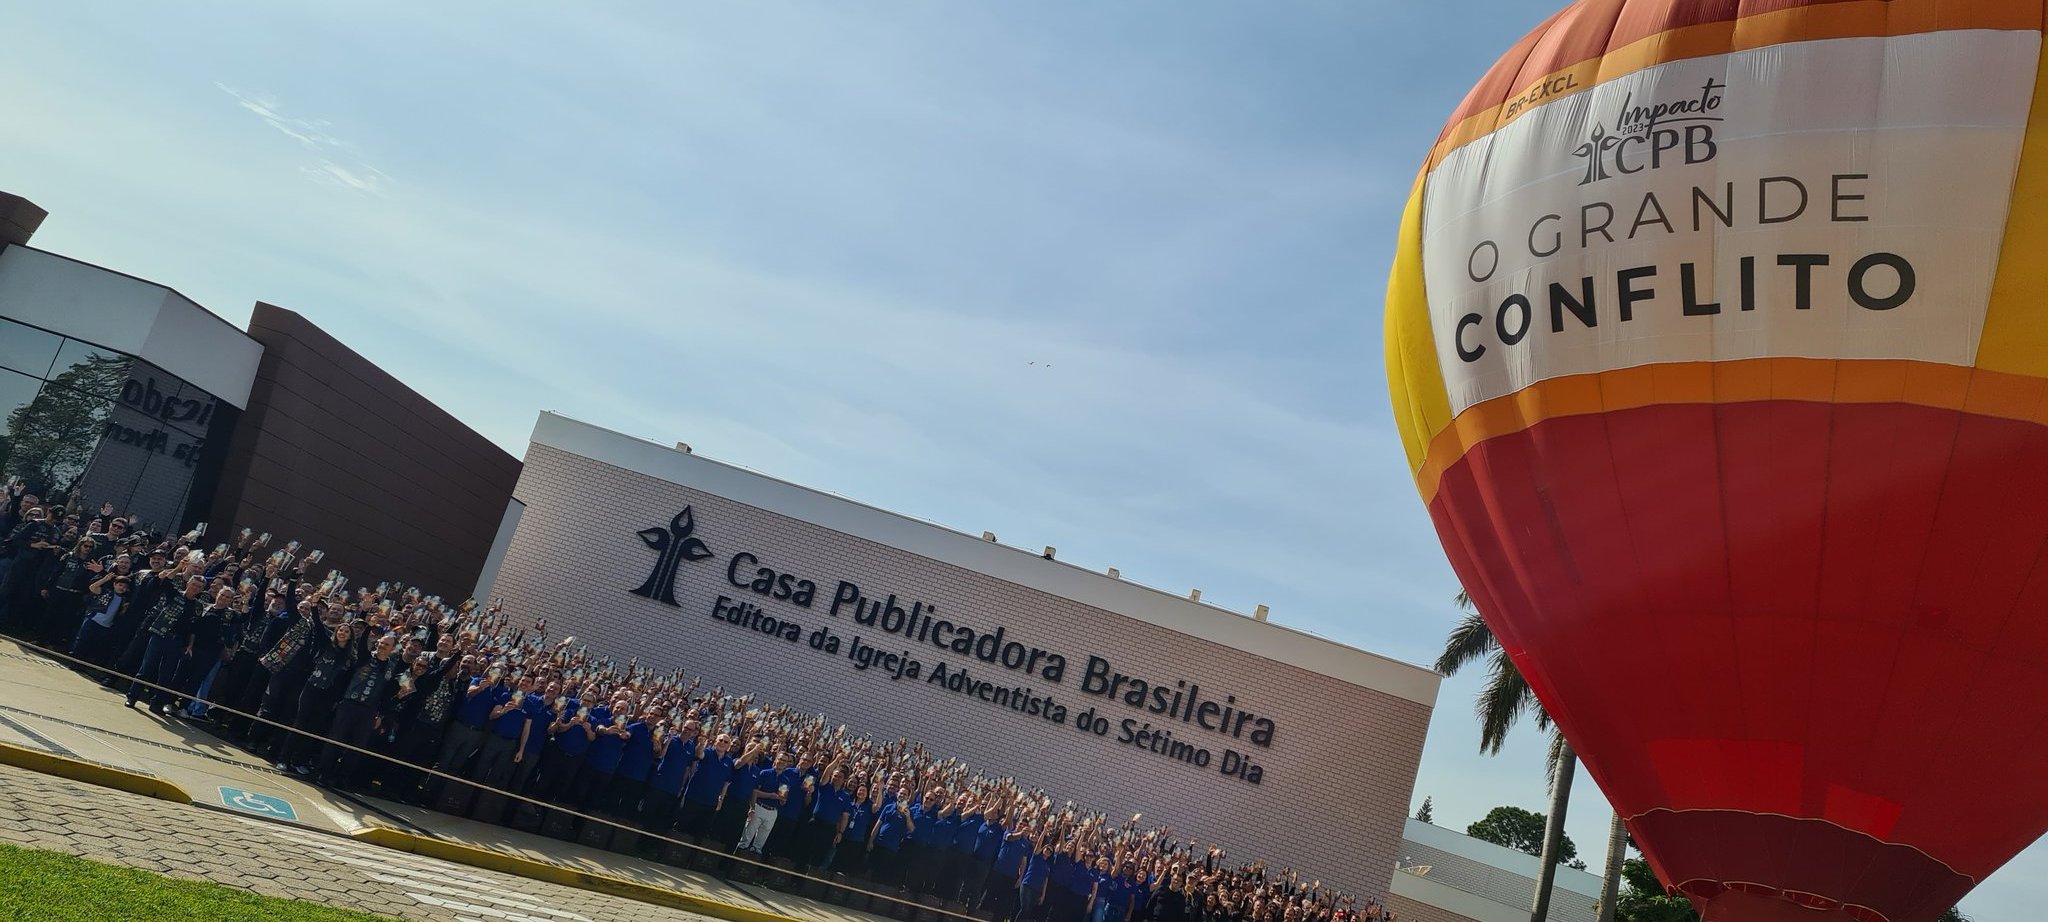 CPB - Casa Publicadora Brasileira - Editora Adventista do Sétimo Dia